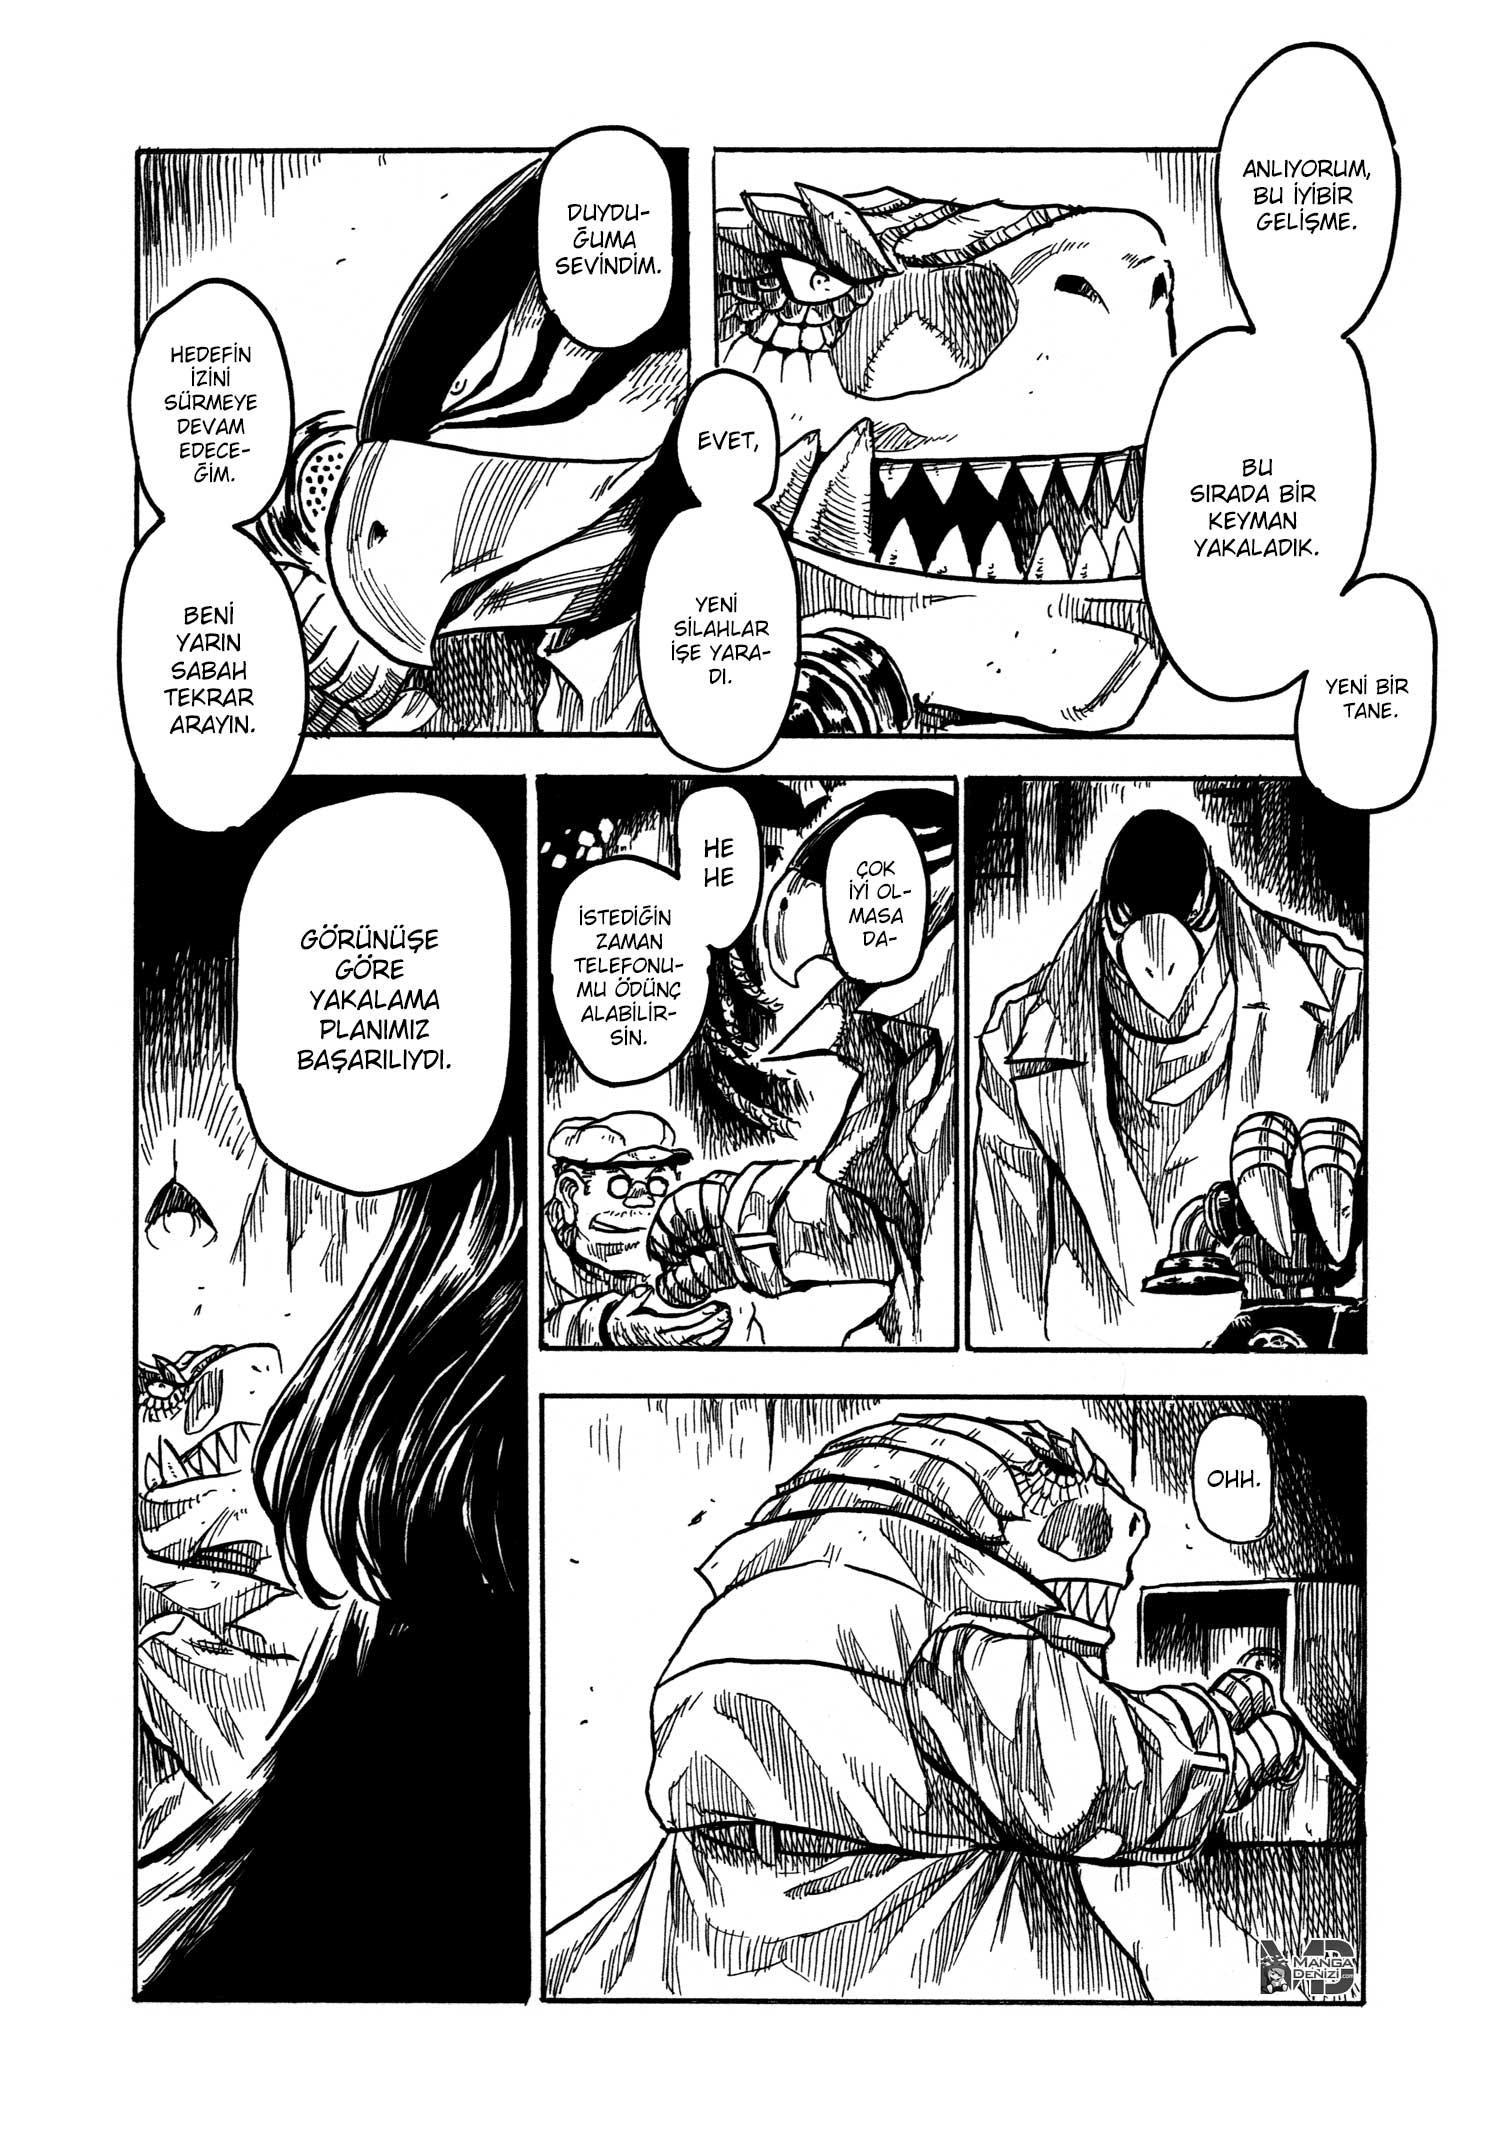 Keyman: The Hand of Judgement mangasının 18 bölümünün 4. sayfasını okuyorsunuz.